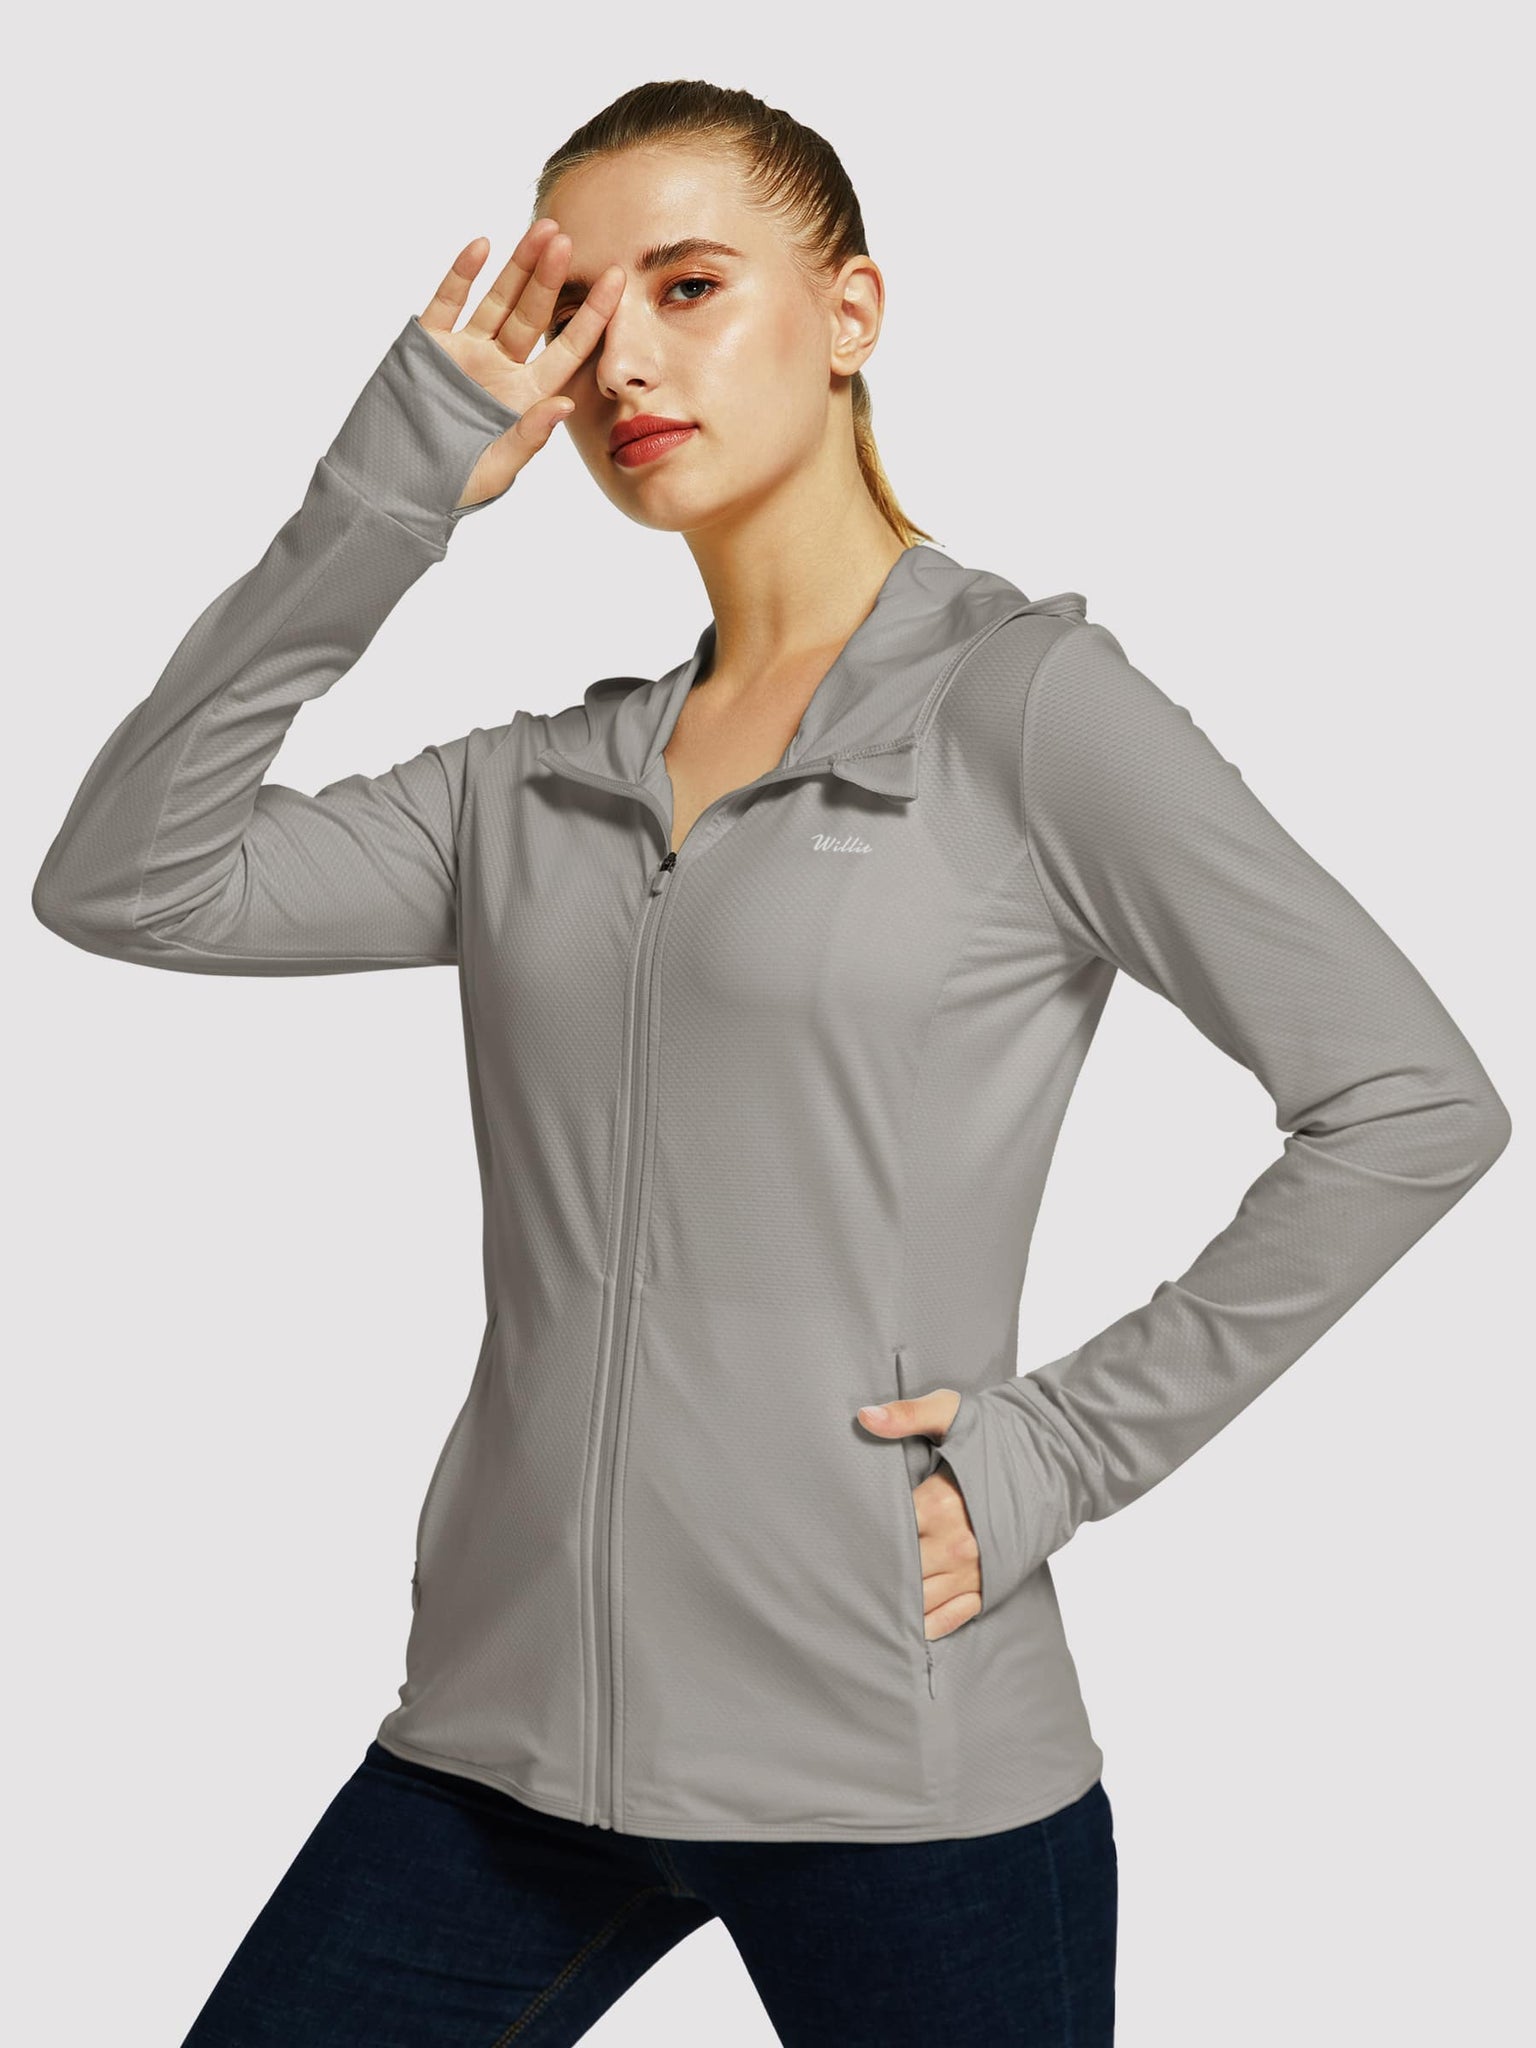 Willit Women's Outdoor Sun Protection Jacket Full Zip_DeepGray_model2